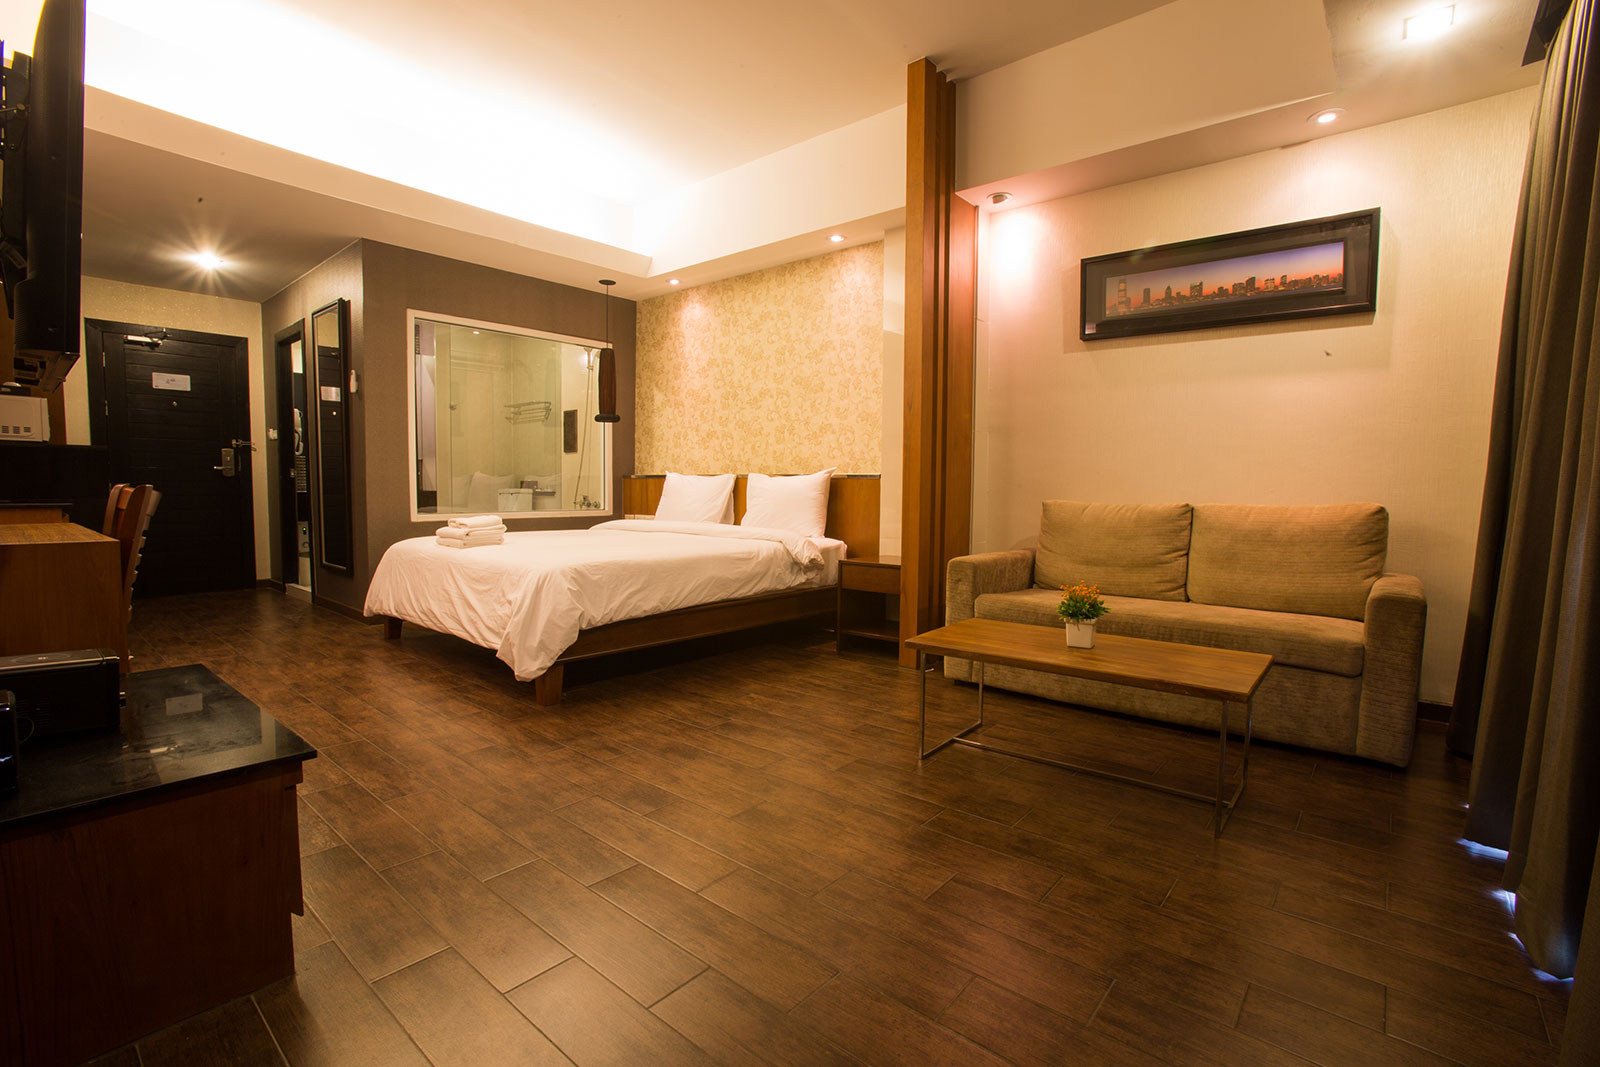 Family Suite Room - Inn Residence Pattaya